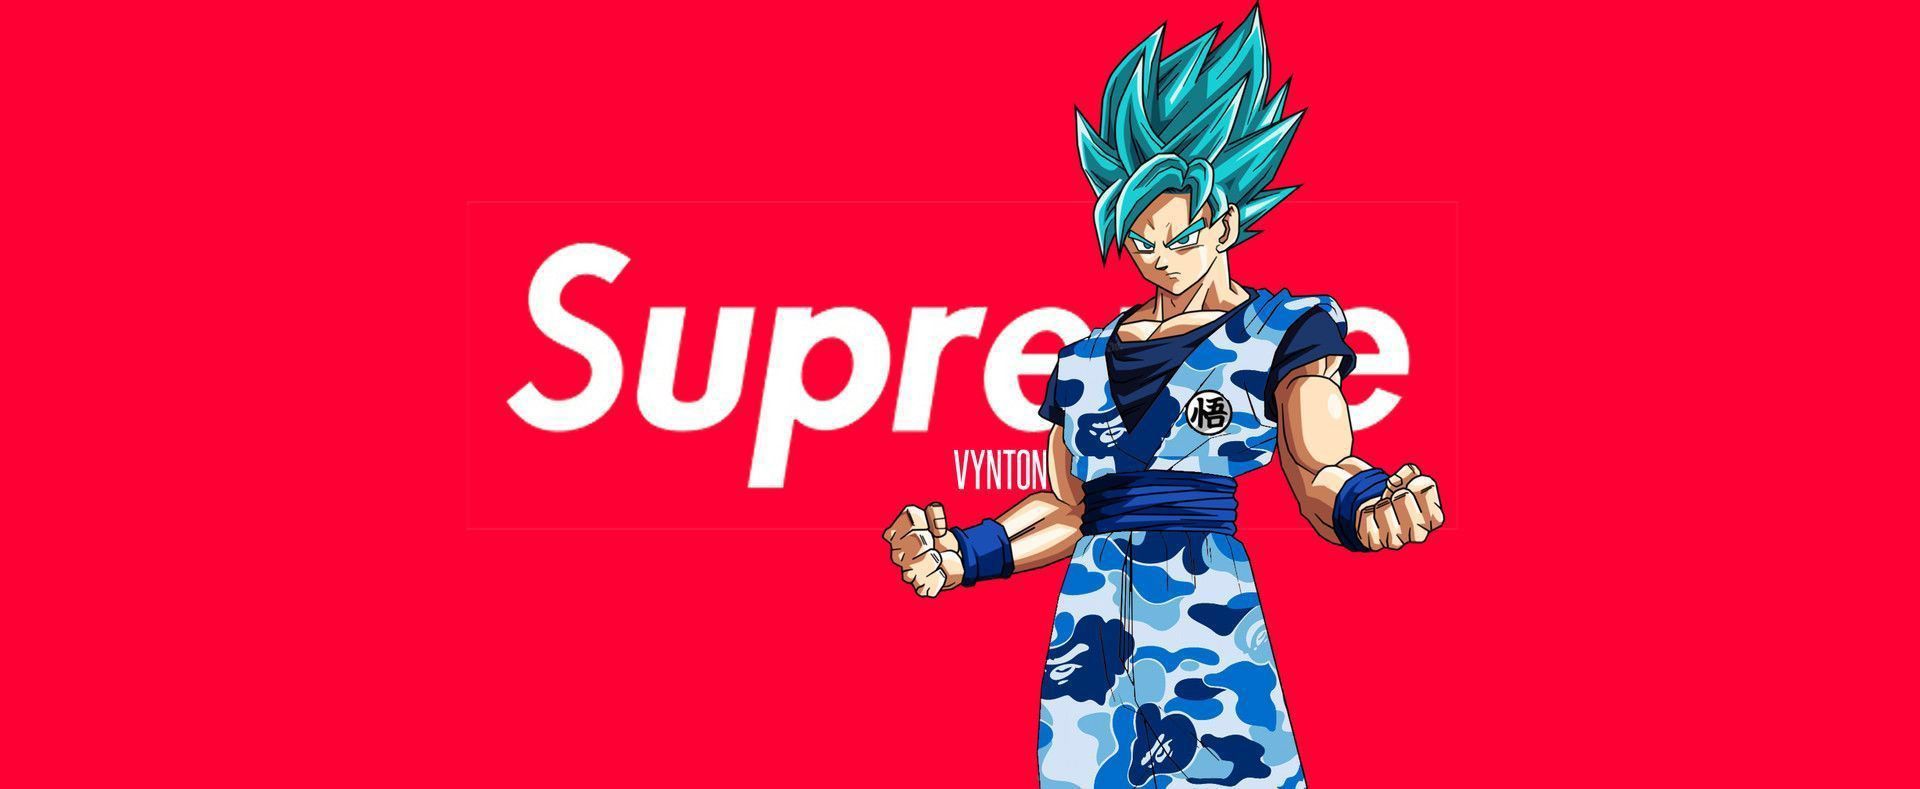 Drip Goku Wallpaper, Bape, Supreme. Goku wallpaper, Supreme wallpaper, Goku